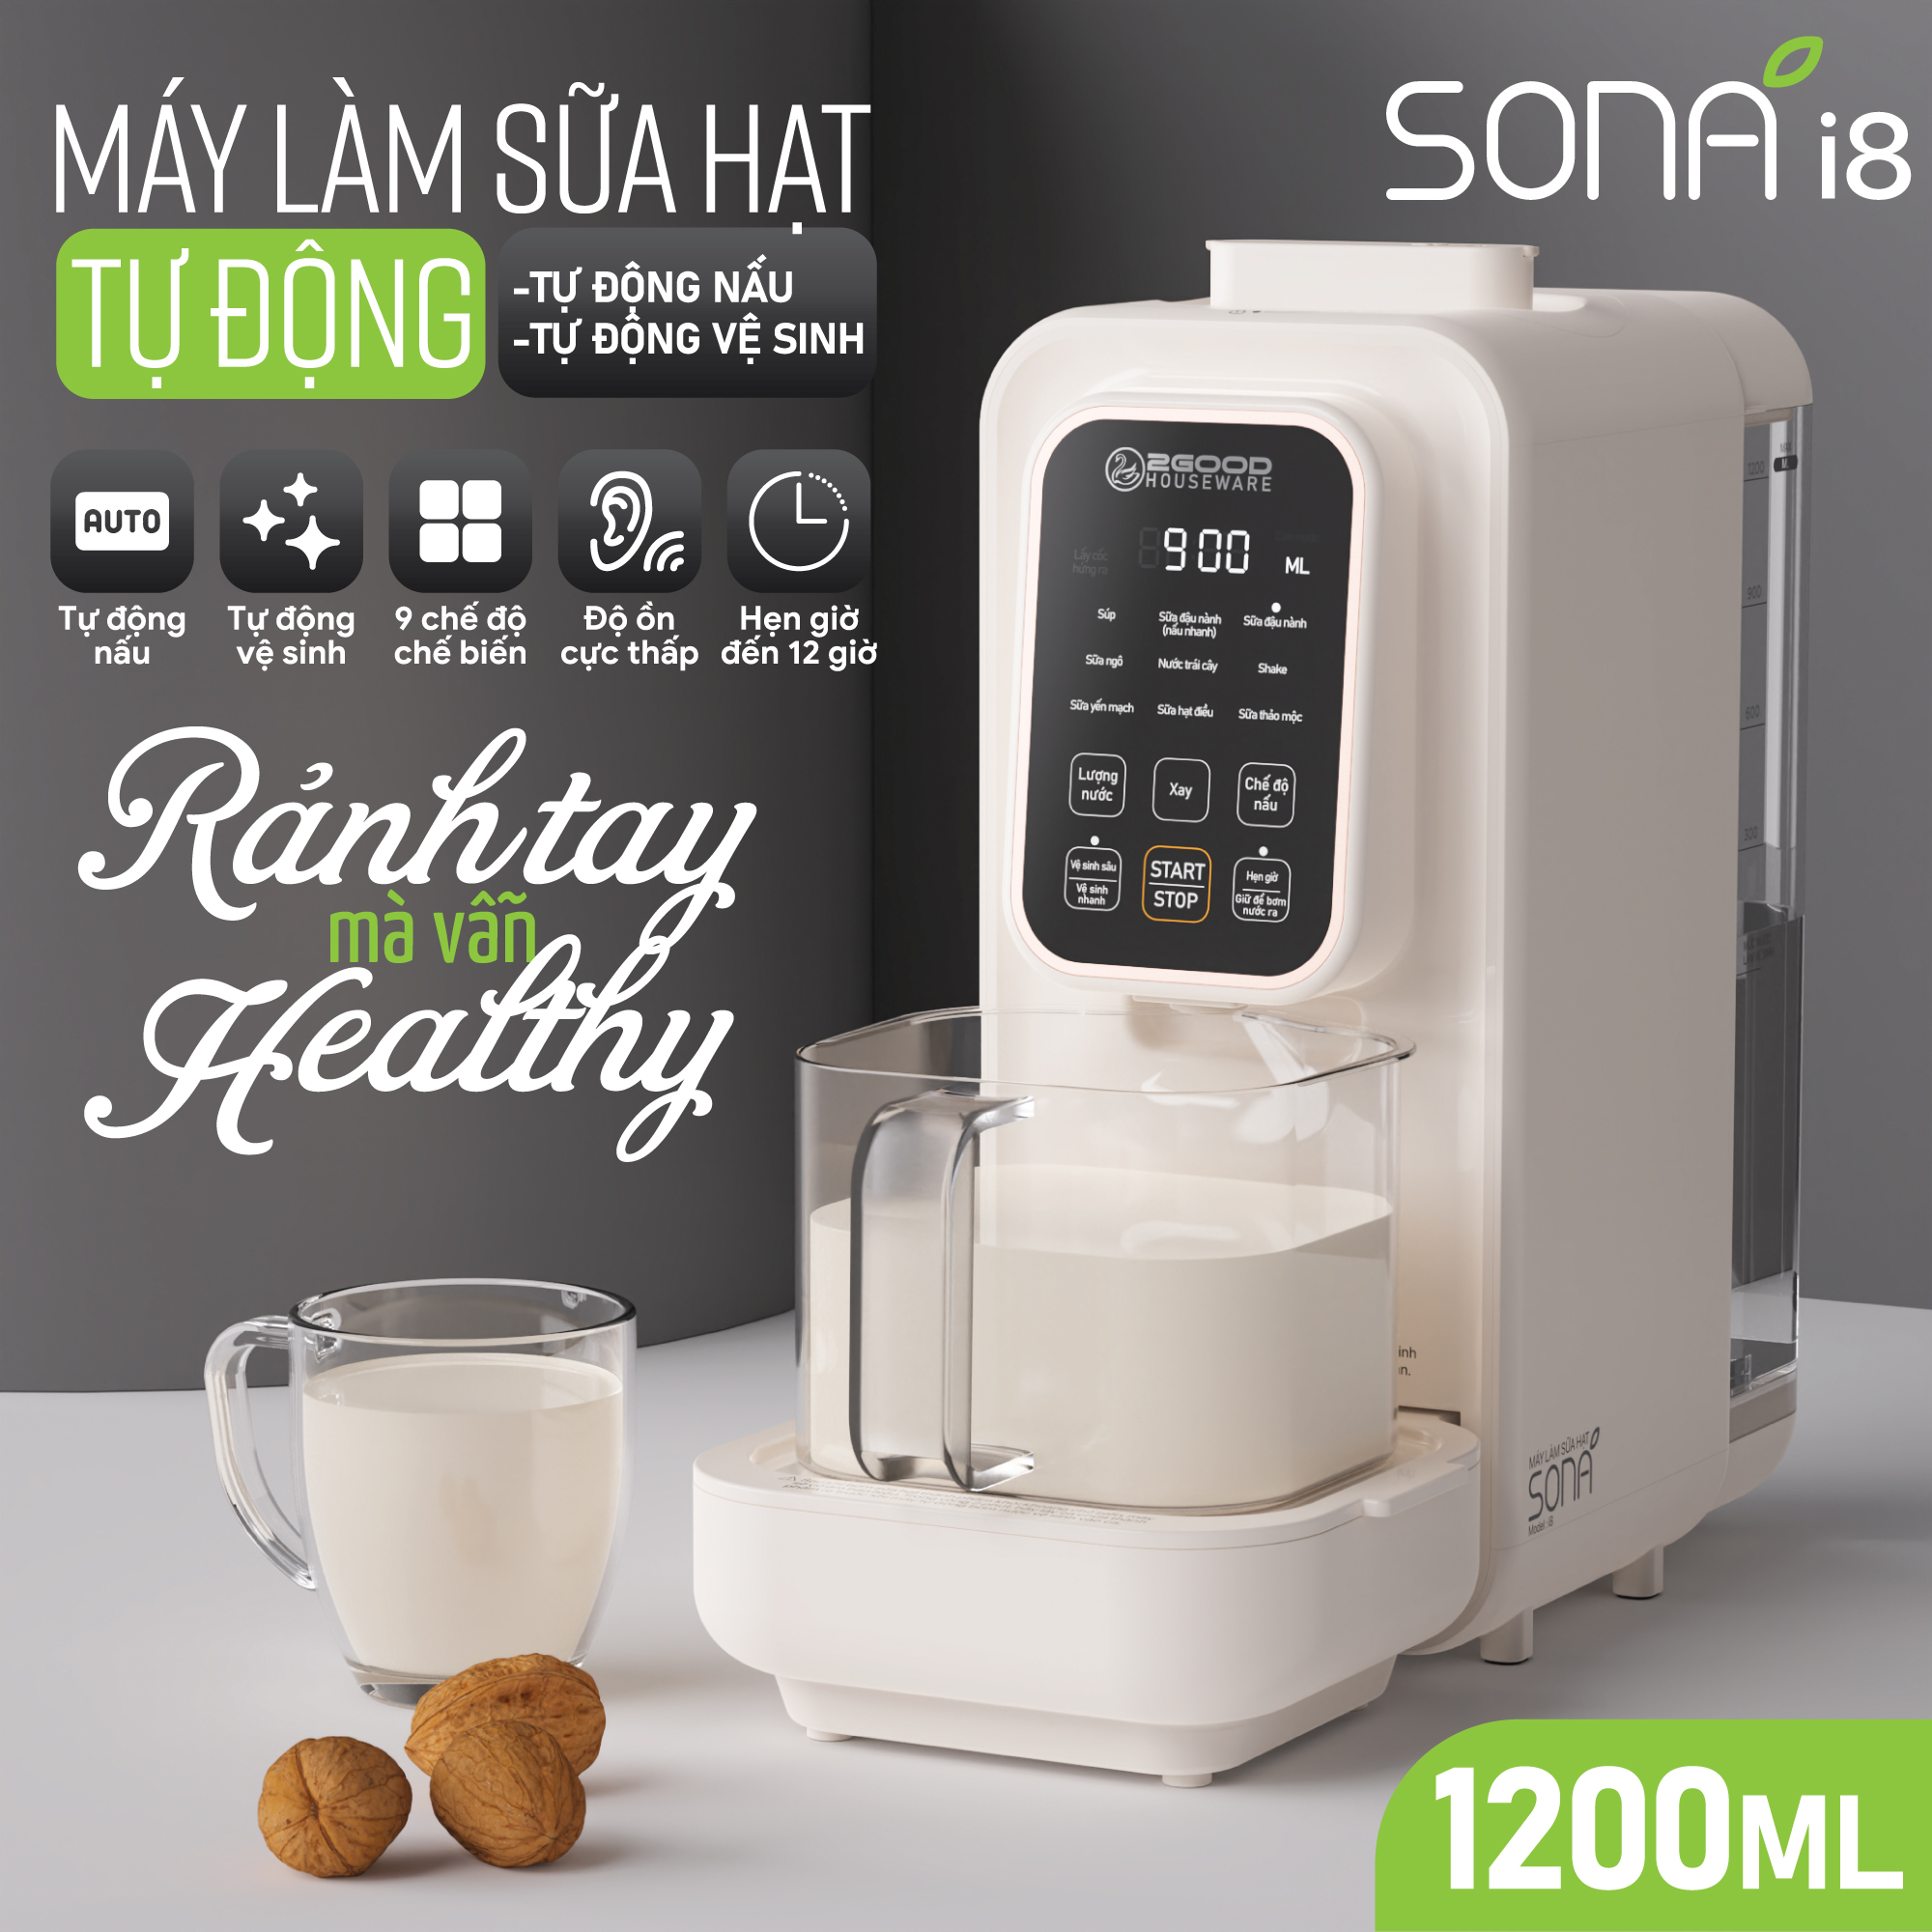 Máy làm sữa hạt chuyên dụng 2GOOD Sona i8 